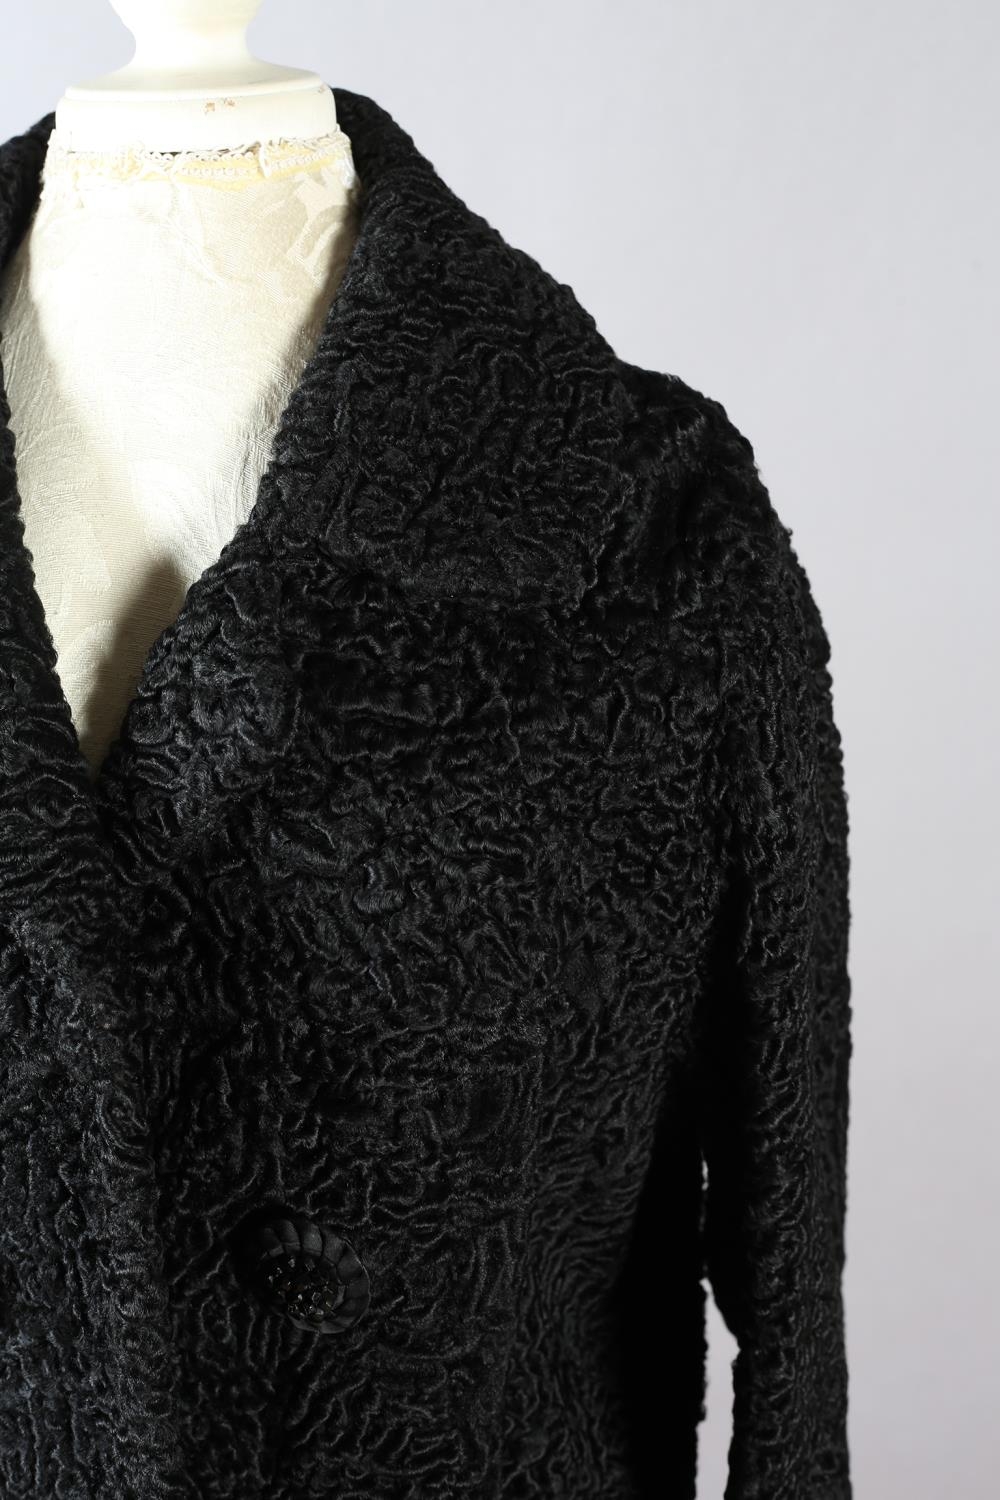 Stylish 20th century Beaver Lamb jacket/coat, c 1950’s, black, three-quarter length, black lining - Image 2 of 5